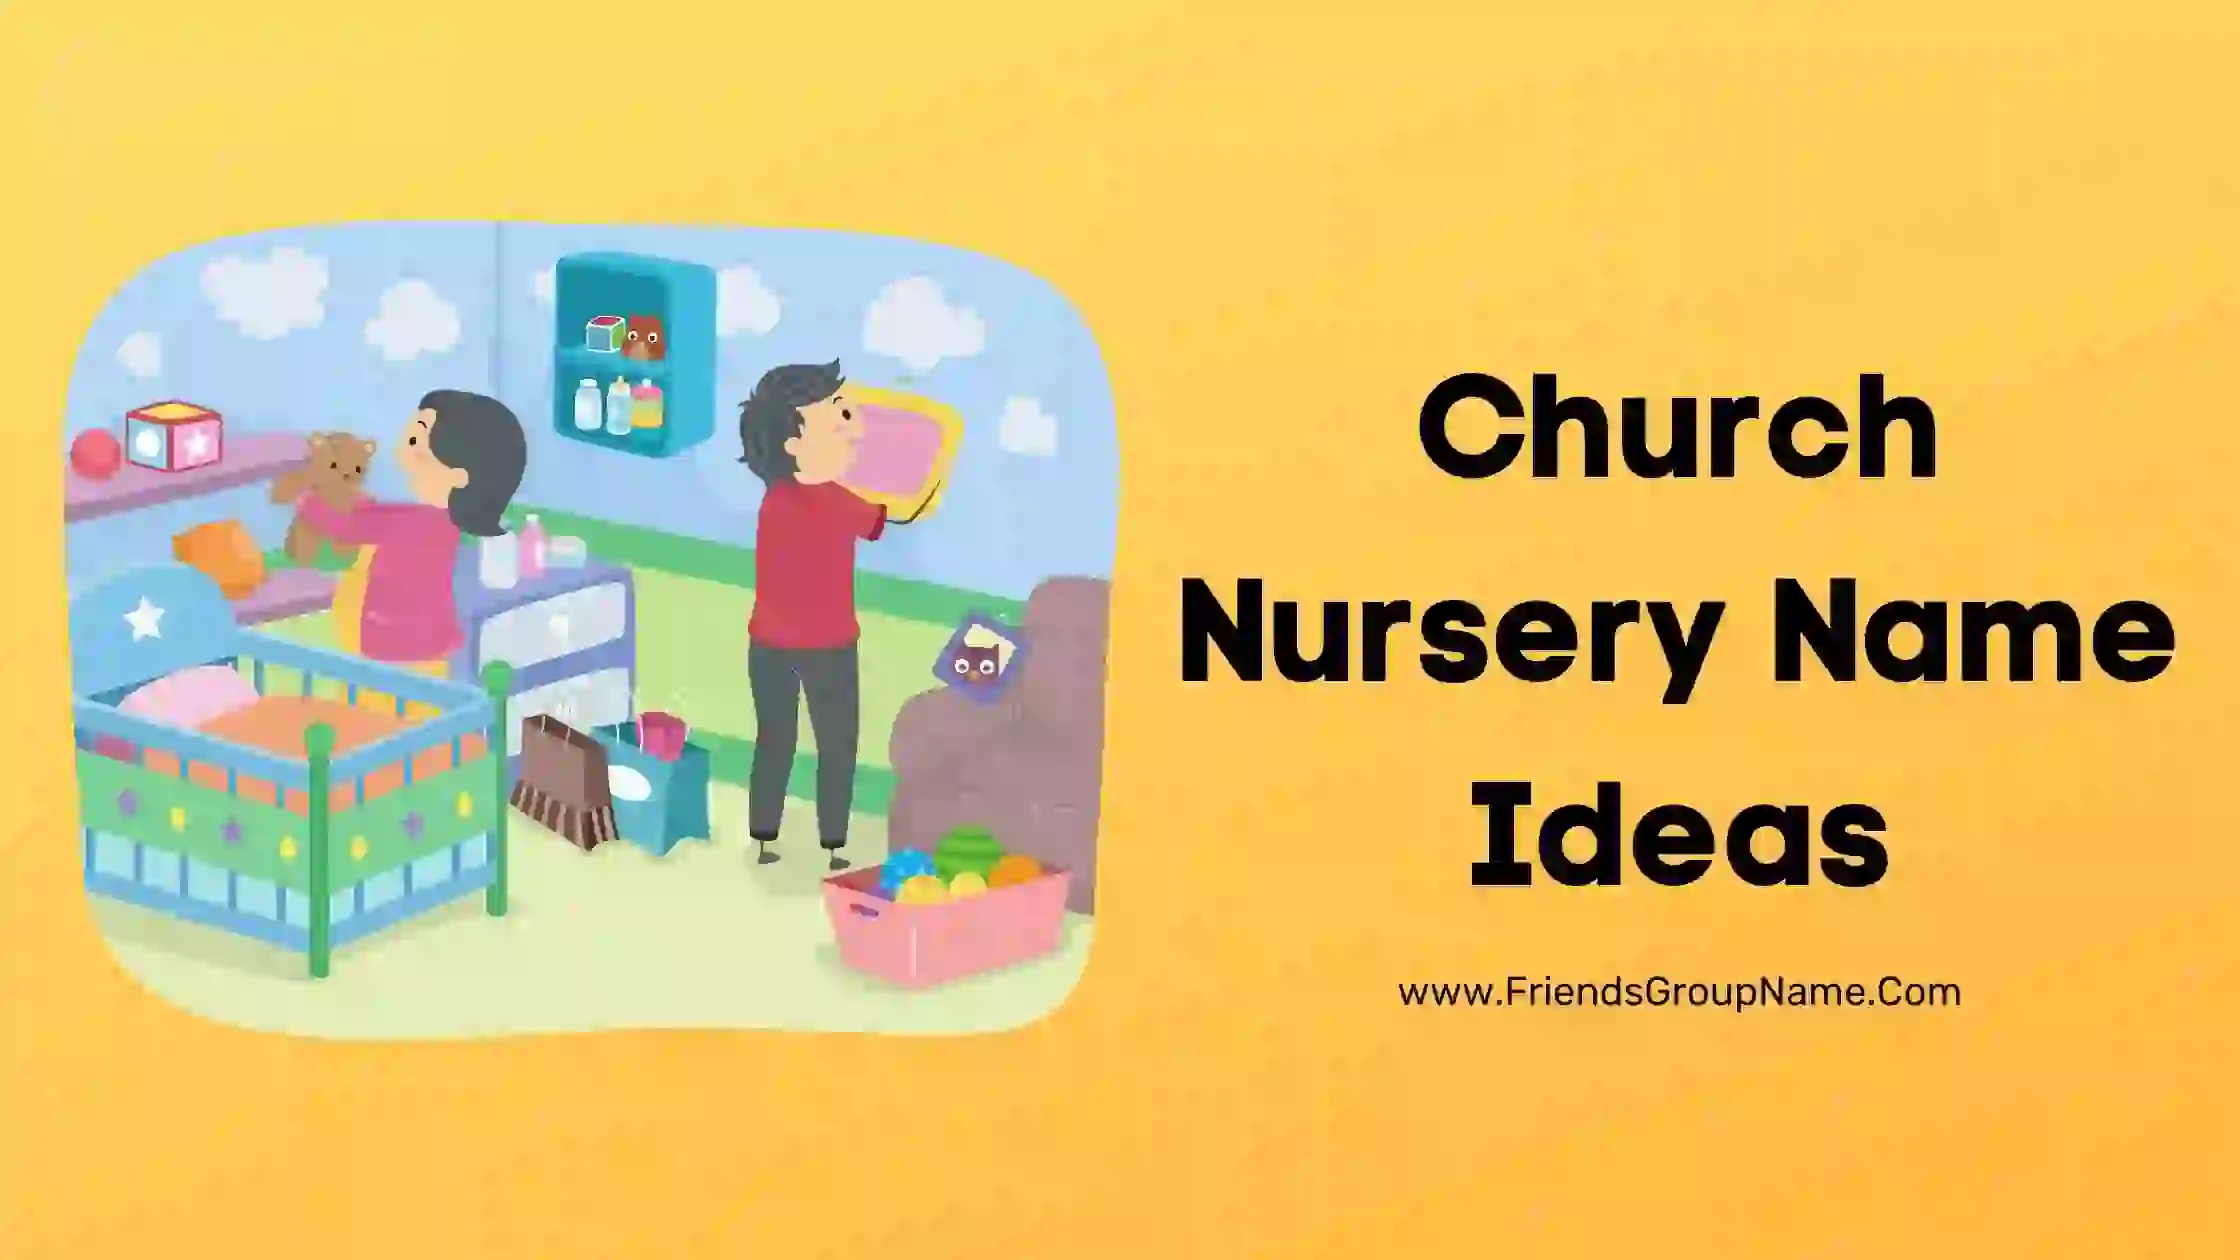 Church Nursery Name Ideas